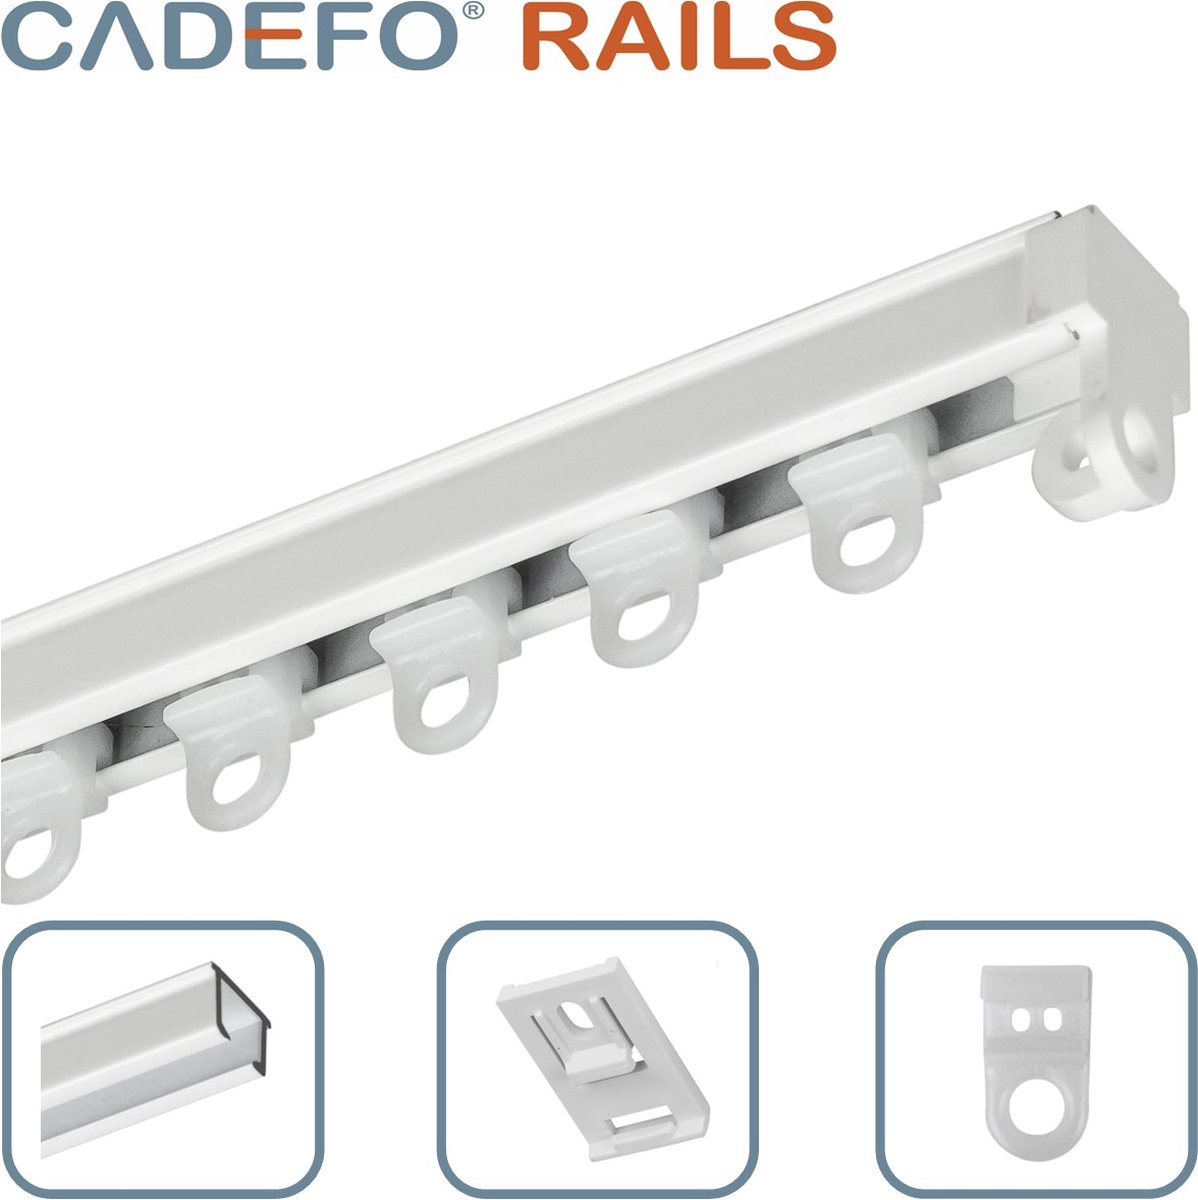 CADEFO RAILS (201 - 250 cm) Gordijnrails - Compleet op maat! - UIT 1 STUK - Leverbaar tot 6 meter - Plafondbevestiging - Lengte 204 cm